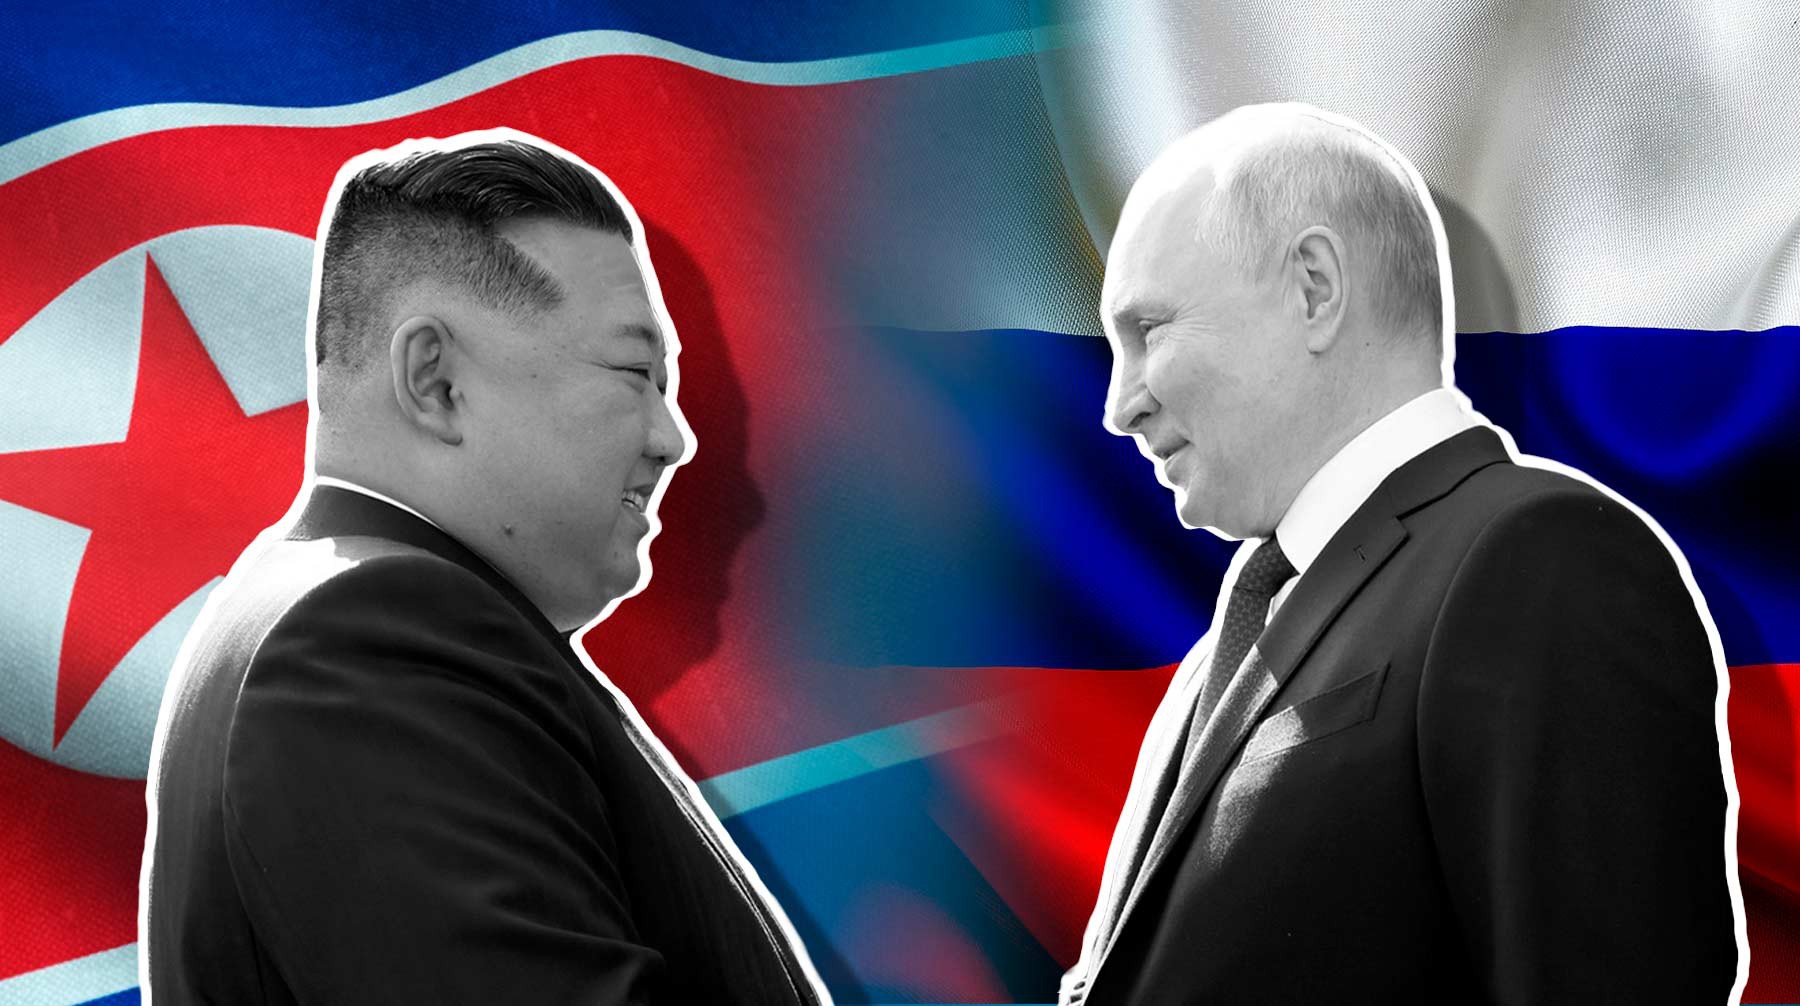 Dailystorm - Рабочая сила и военная мощь: какую пользу принесет России сотрудничество с КНДР